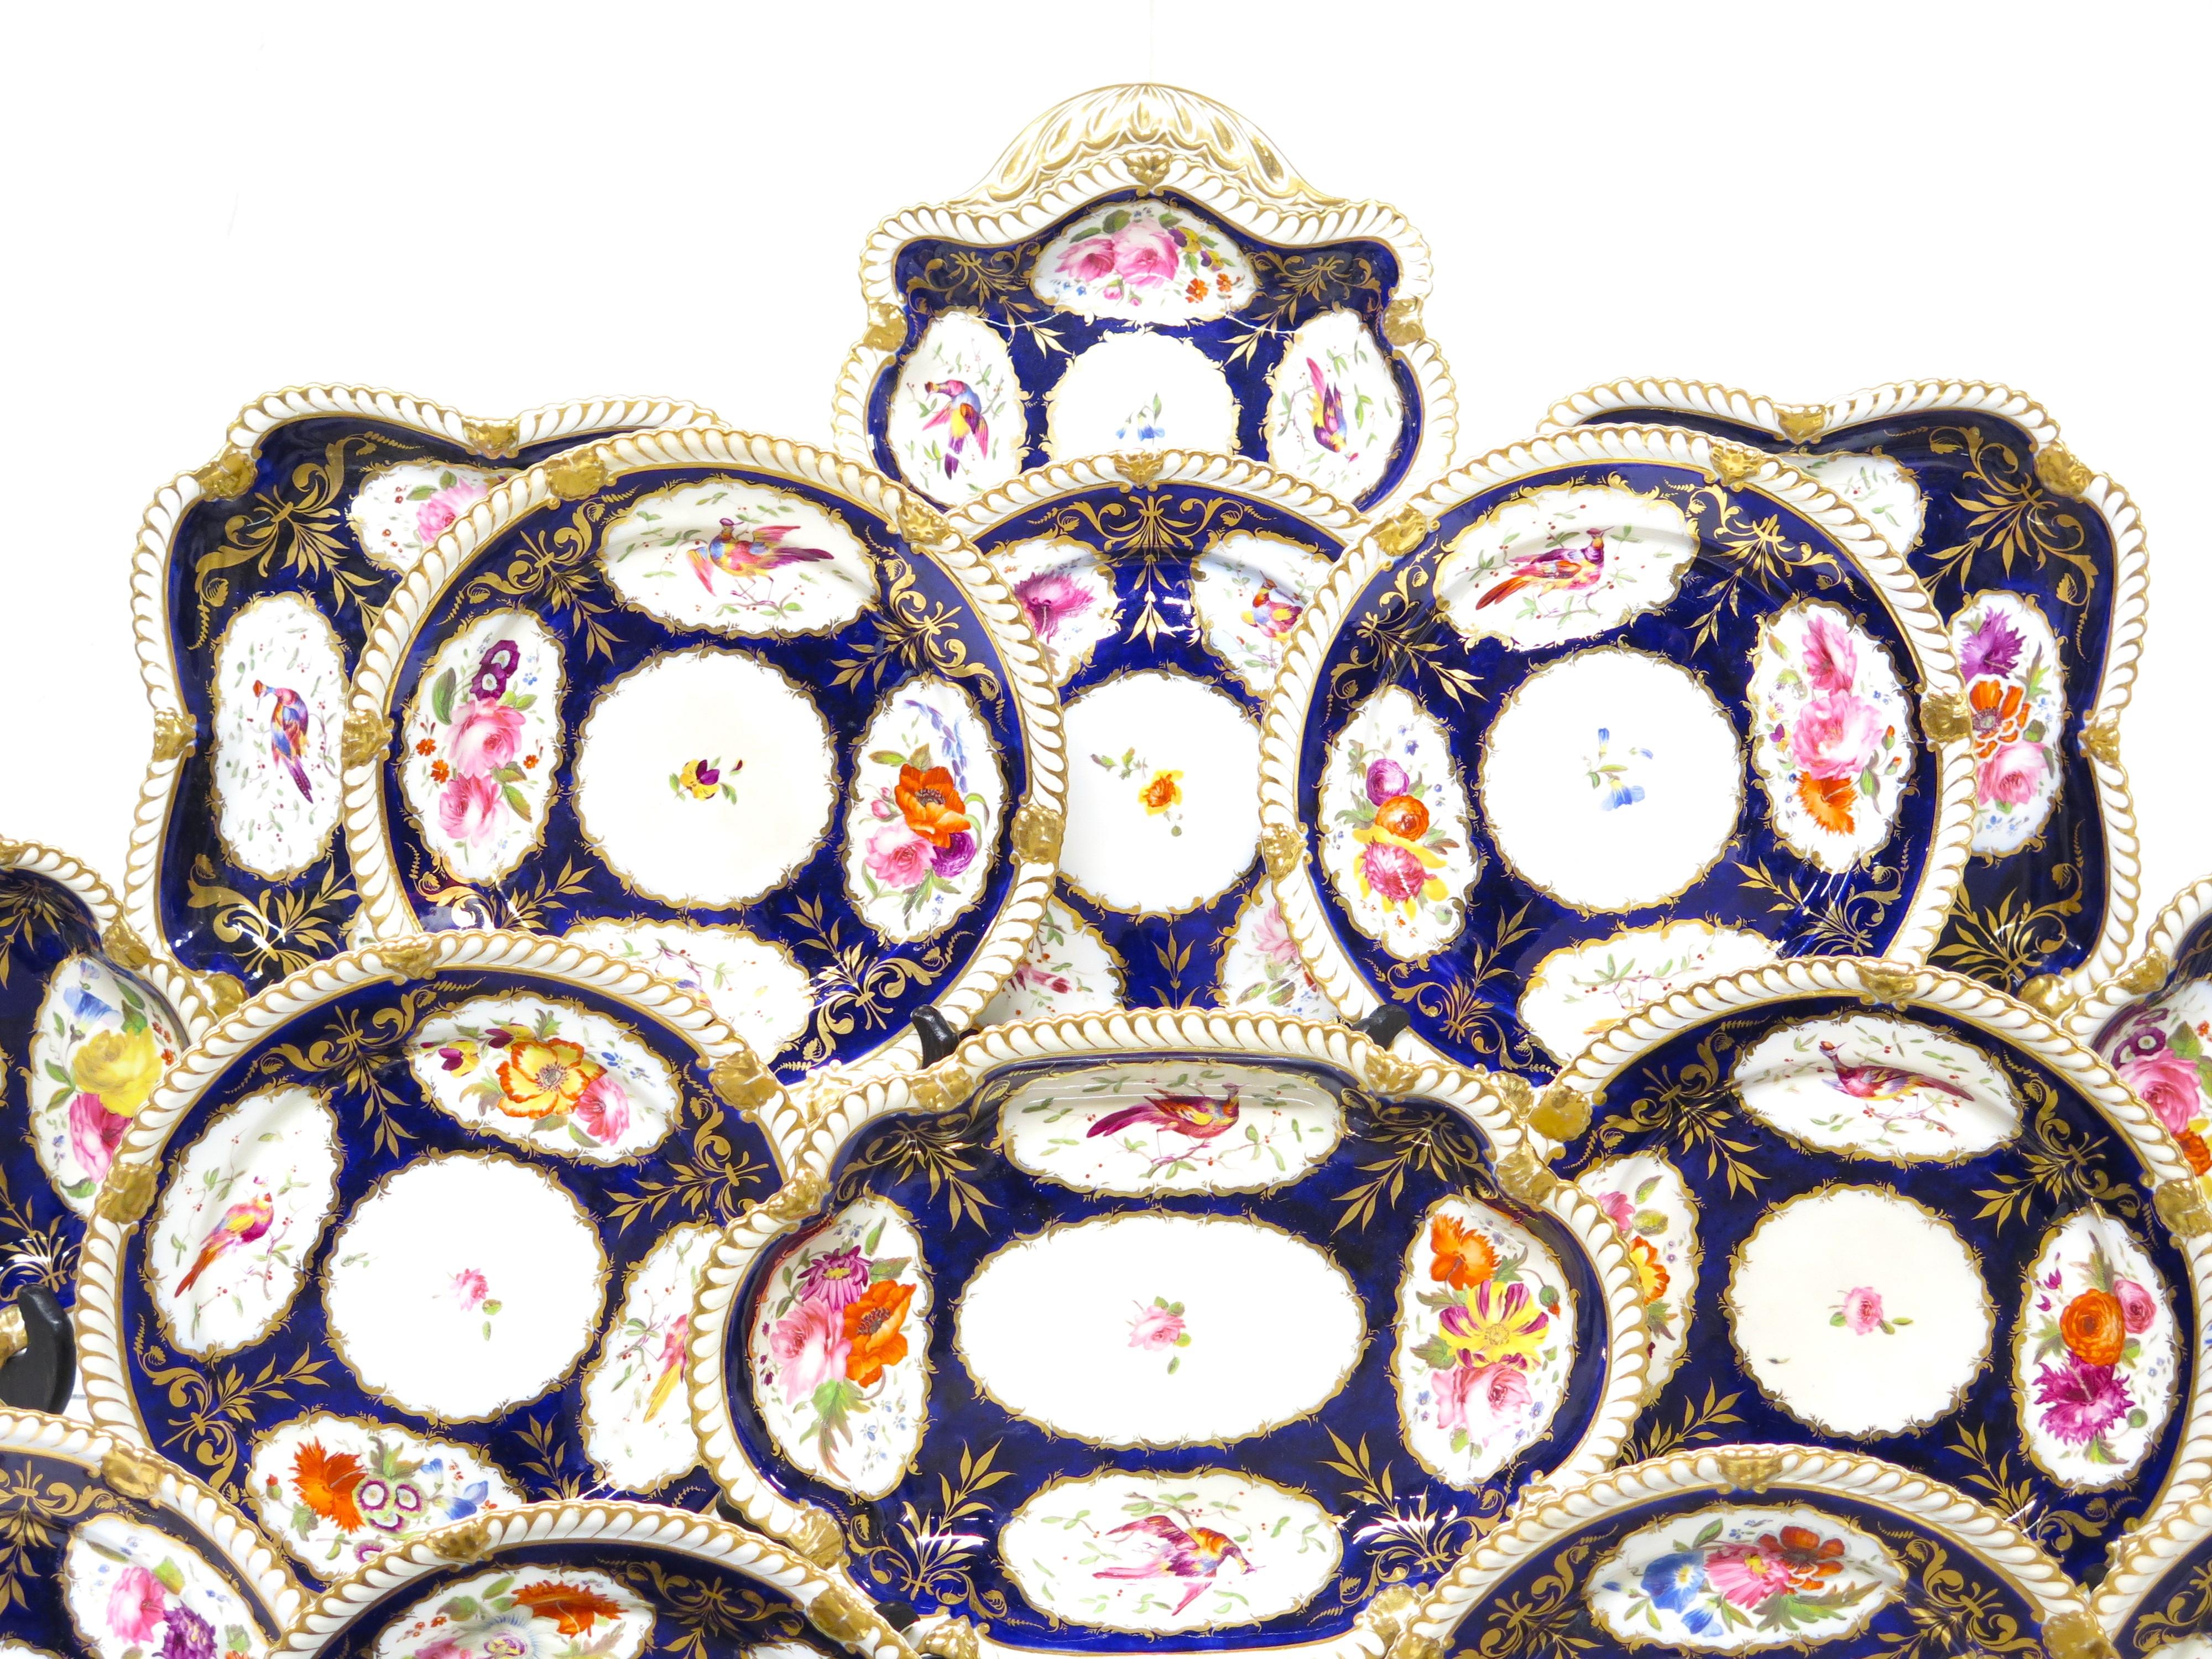 eine 26-teilige Gruppe von kobaltblauem, vergoldetem und blattförmigem Geschirr im Stil von Royal Crown Derby / China,  nicht gekennzeichnet. England, um 1835

MASSNAHMEN:

17 Platten mit 8,5